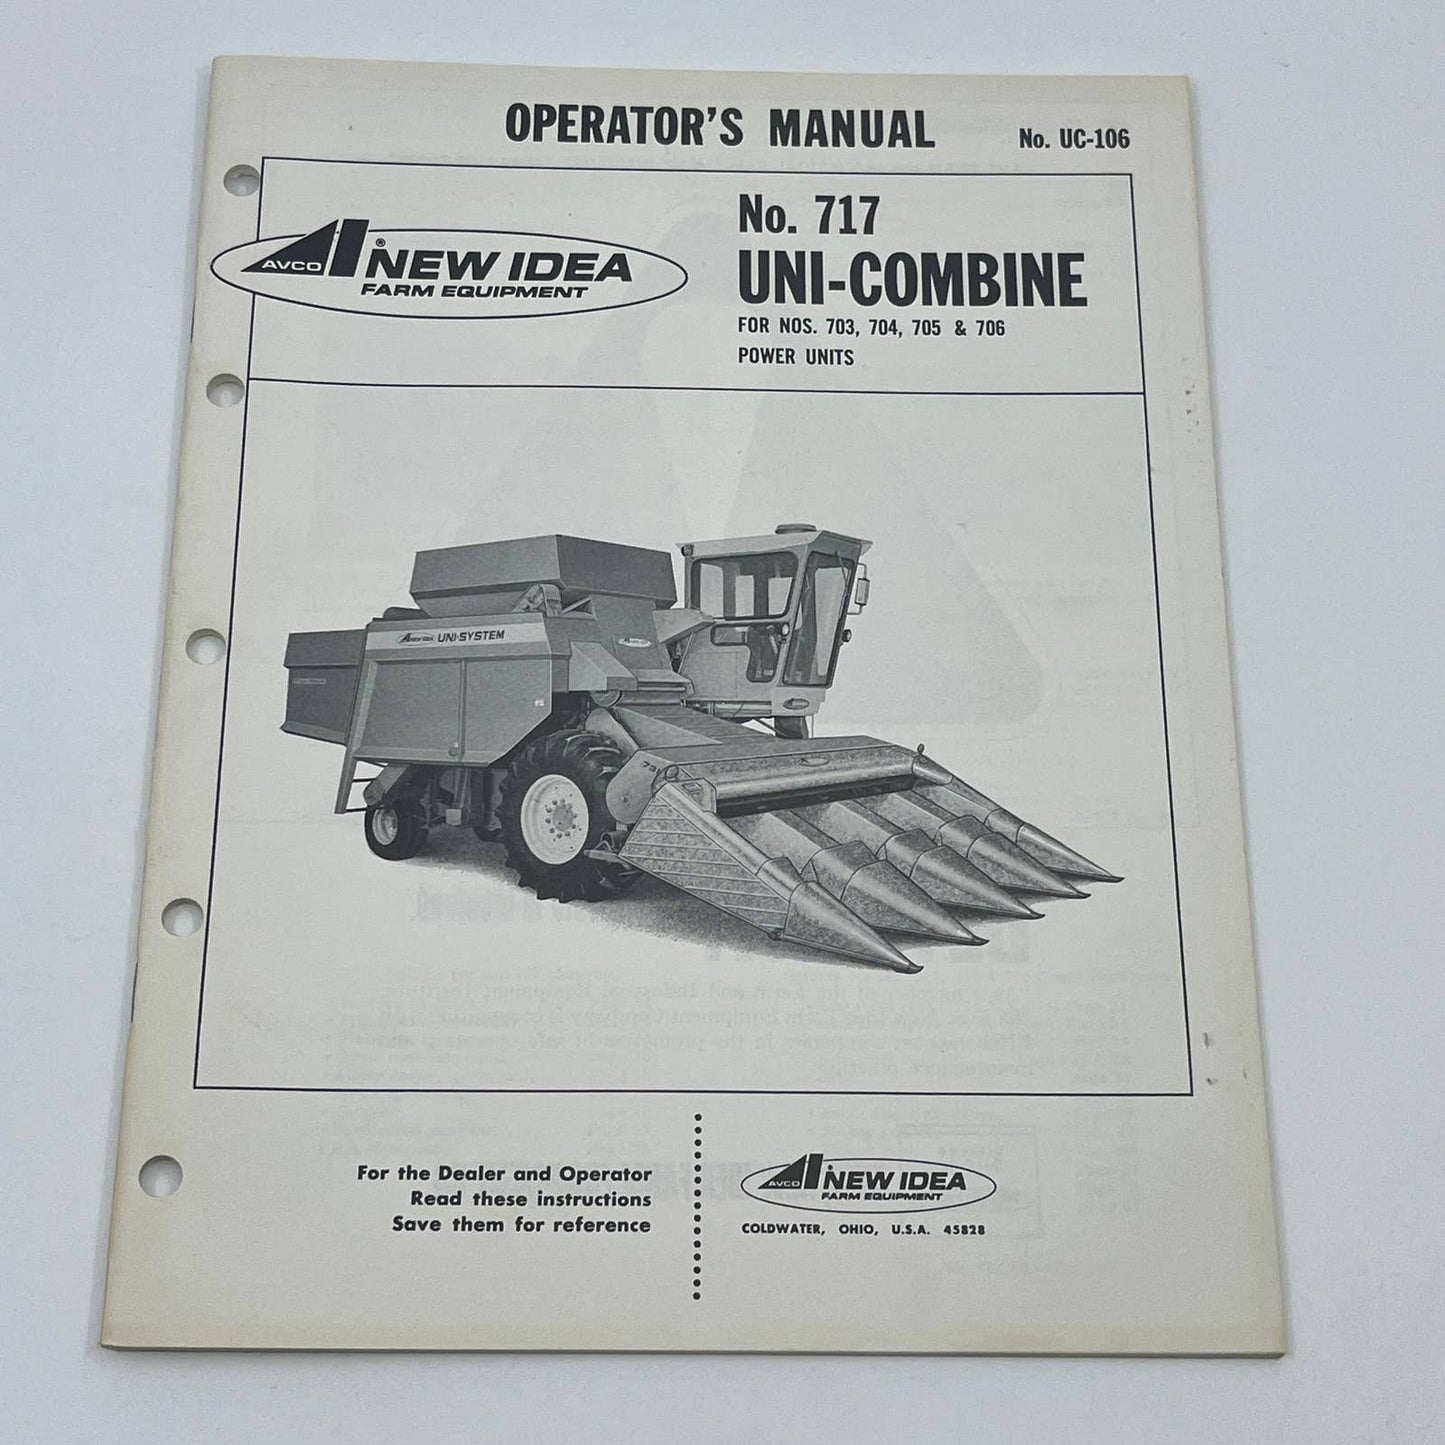 Original 1974 New Idea No 717 Uni-Combine 703 704 705 706 Power Units Manual TB9